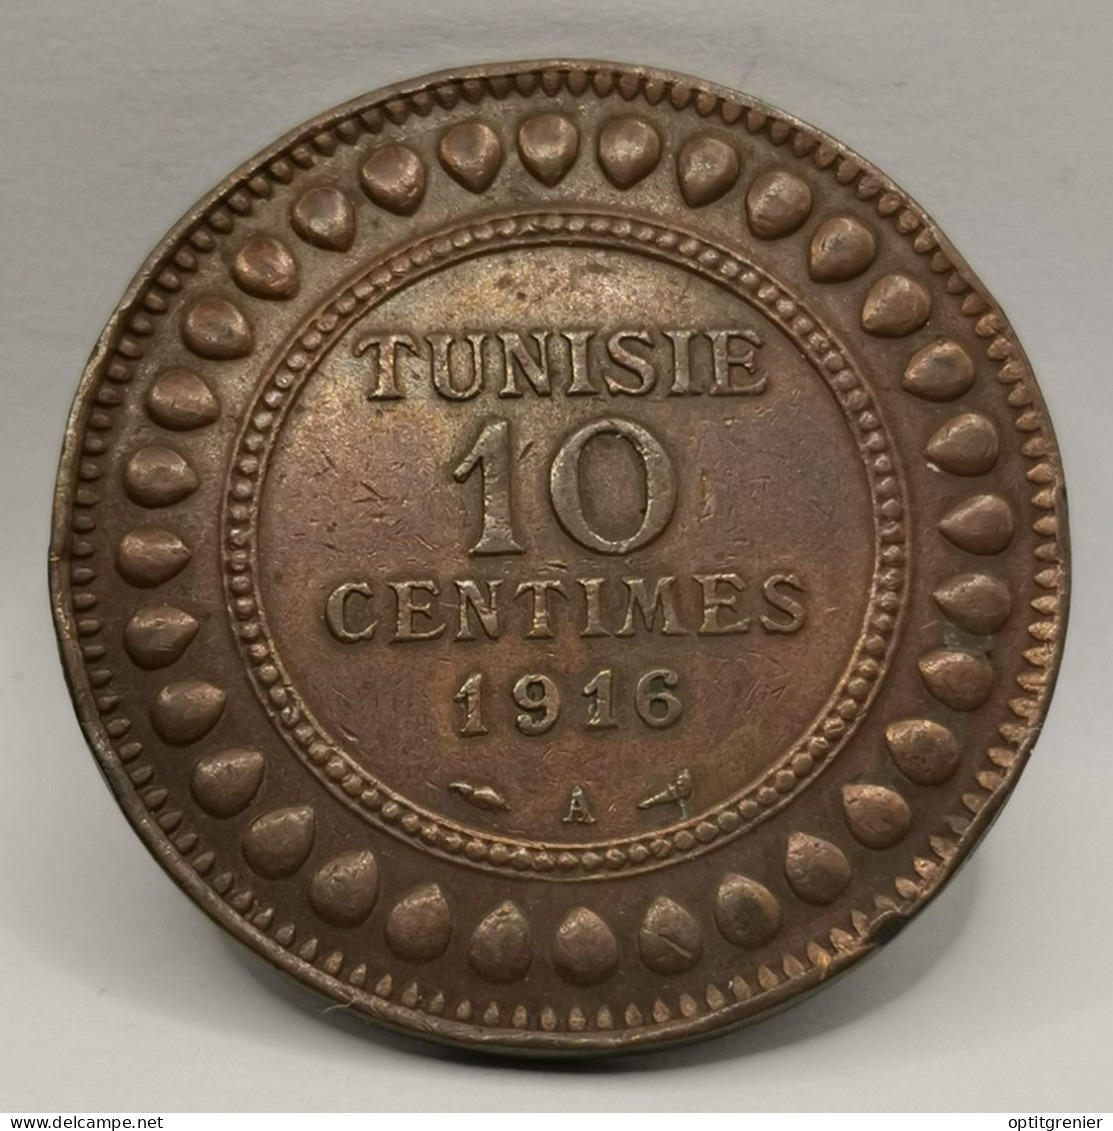 10 CENTIMES 1916 TUNISIE / TUNISIA - Tunisie